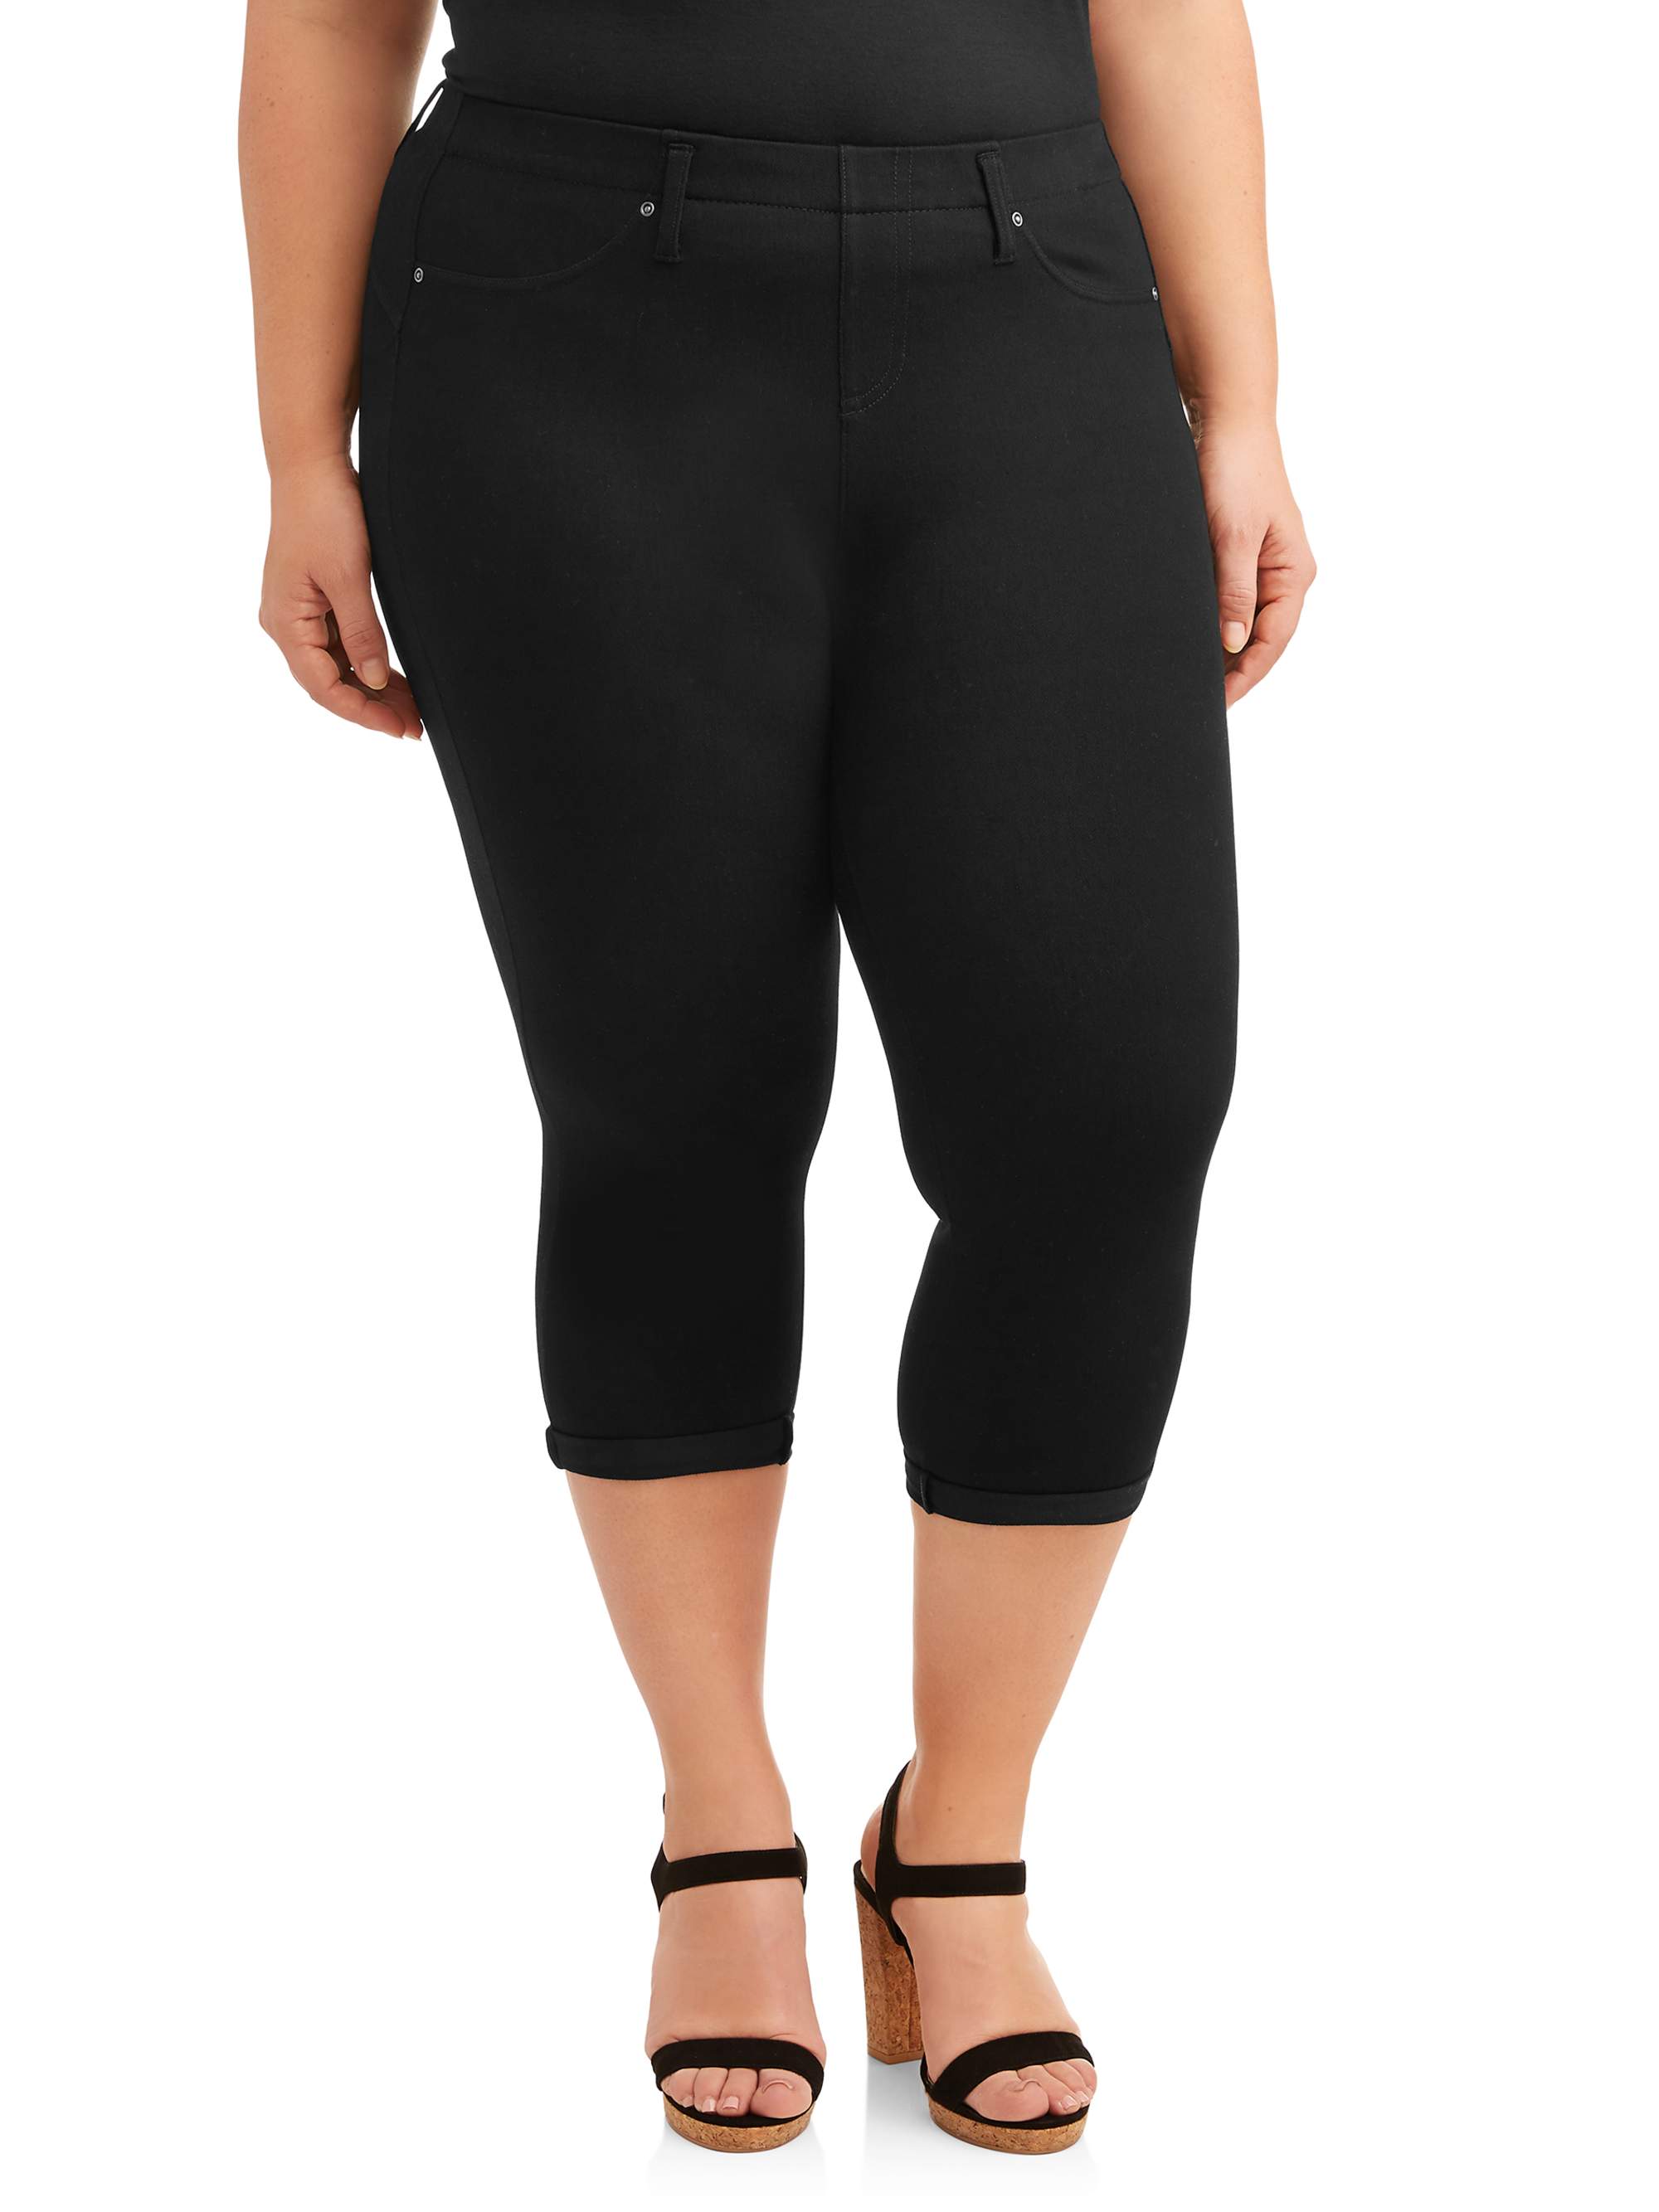 Terra & Sky Women's Plus Size Pull on Denim Capri Jeggings - image 1 of 9